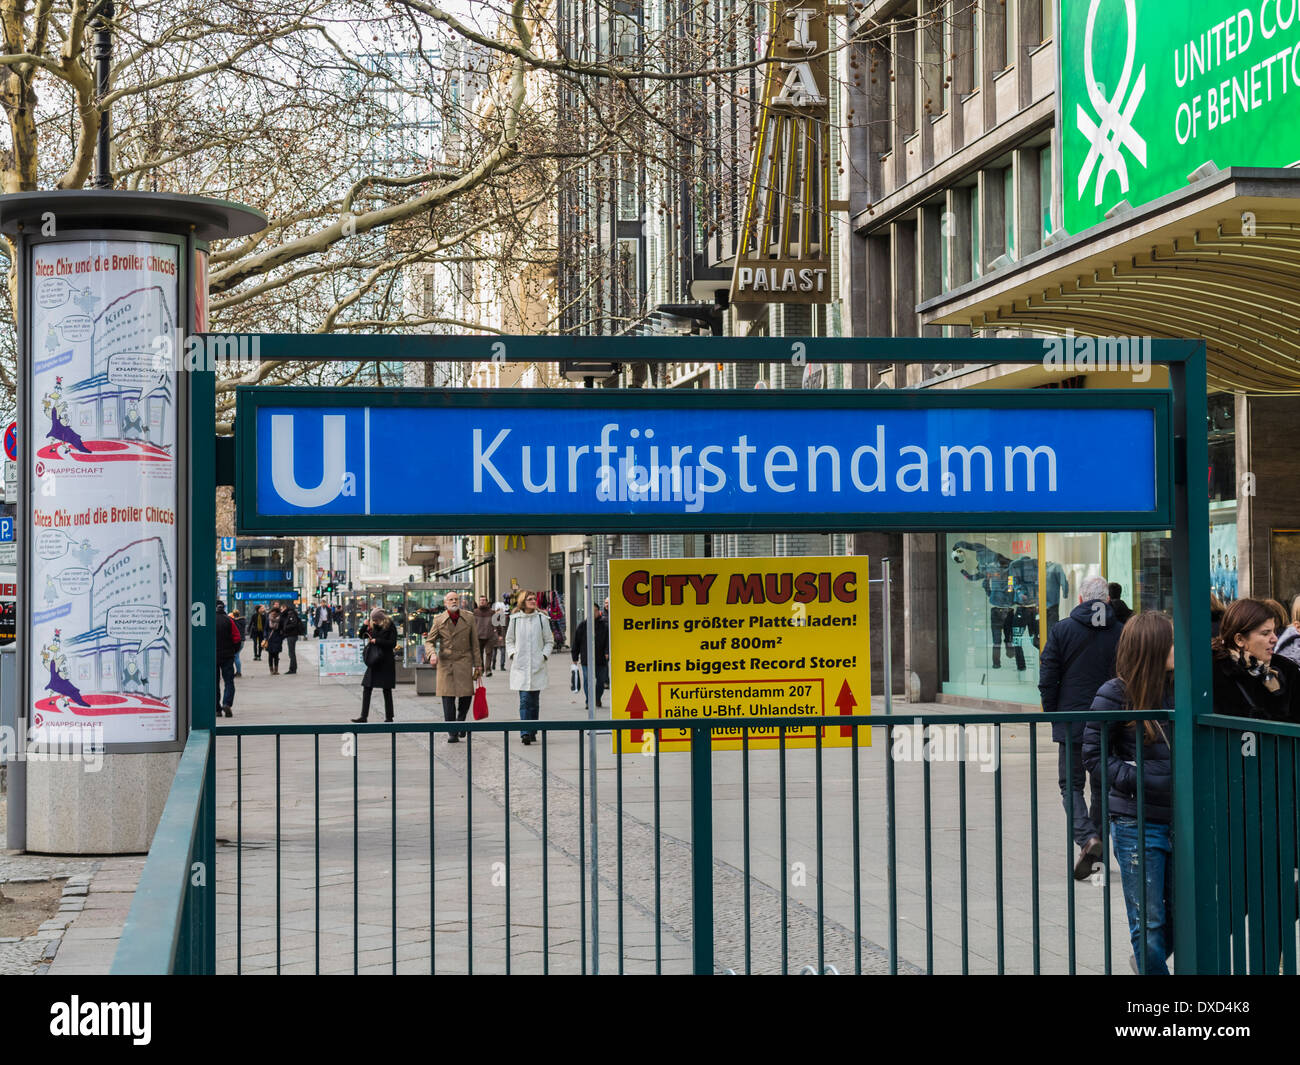 Kurfurstendamm U-Bahn station, Berlin, Germany, Europe Banque D'Images